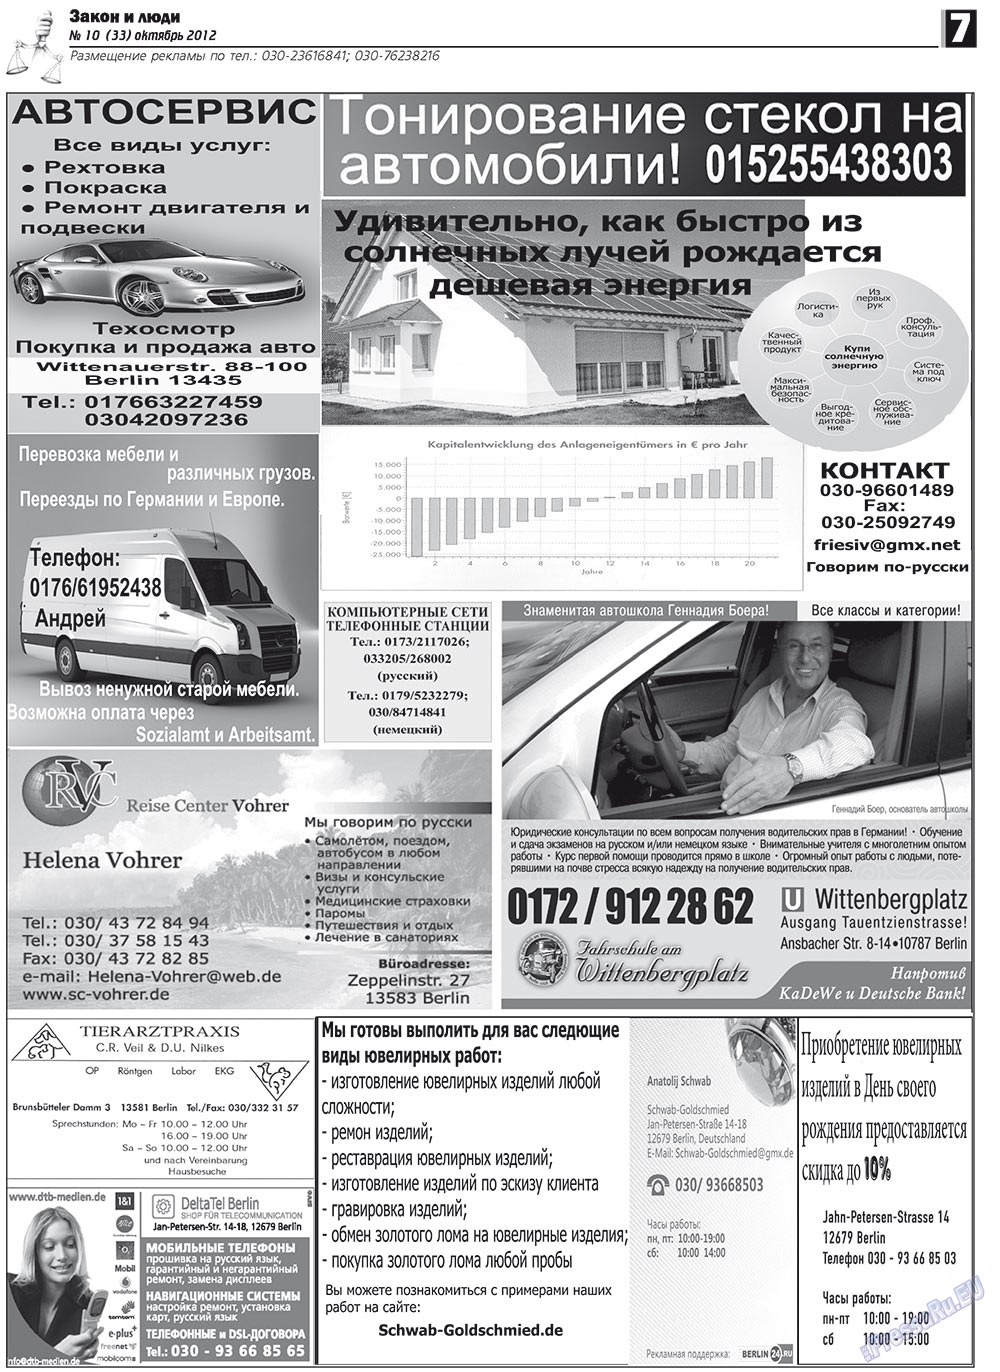 Закон и люди, газета. 2012 №10 стр.7